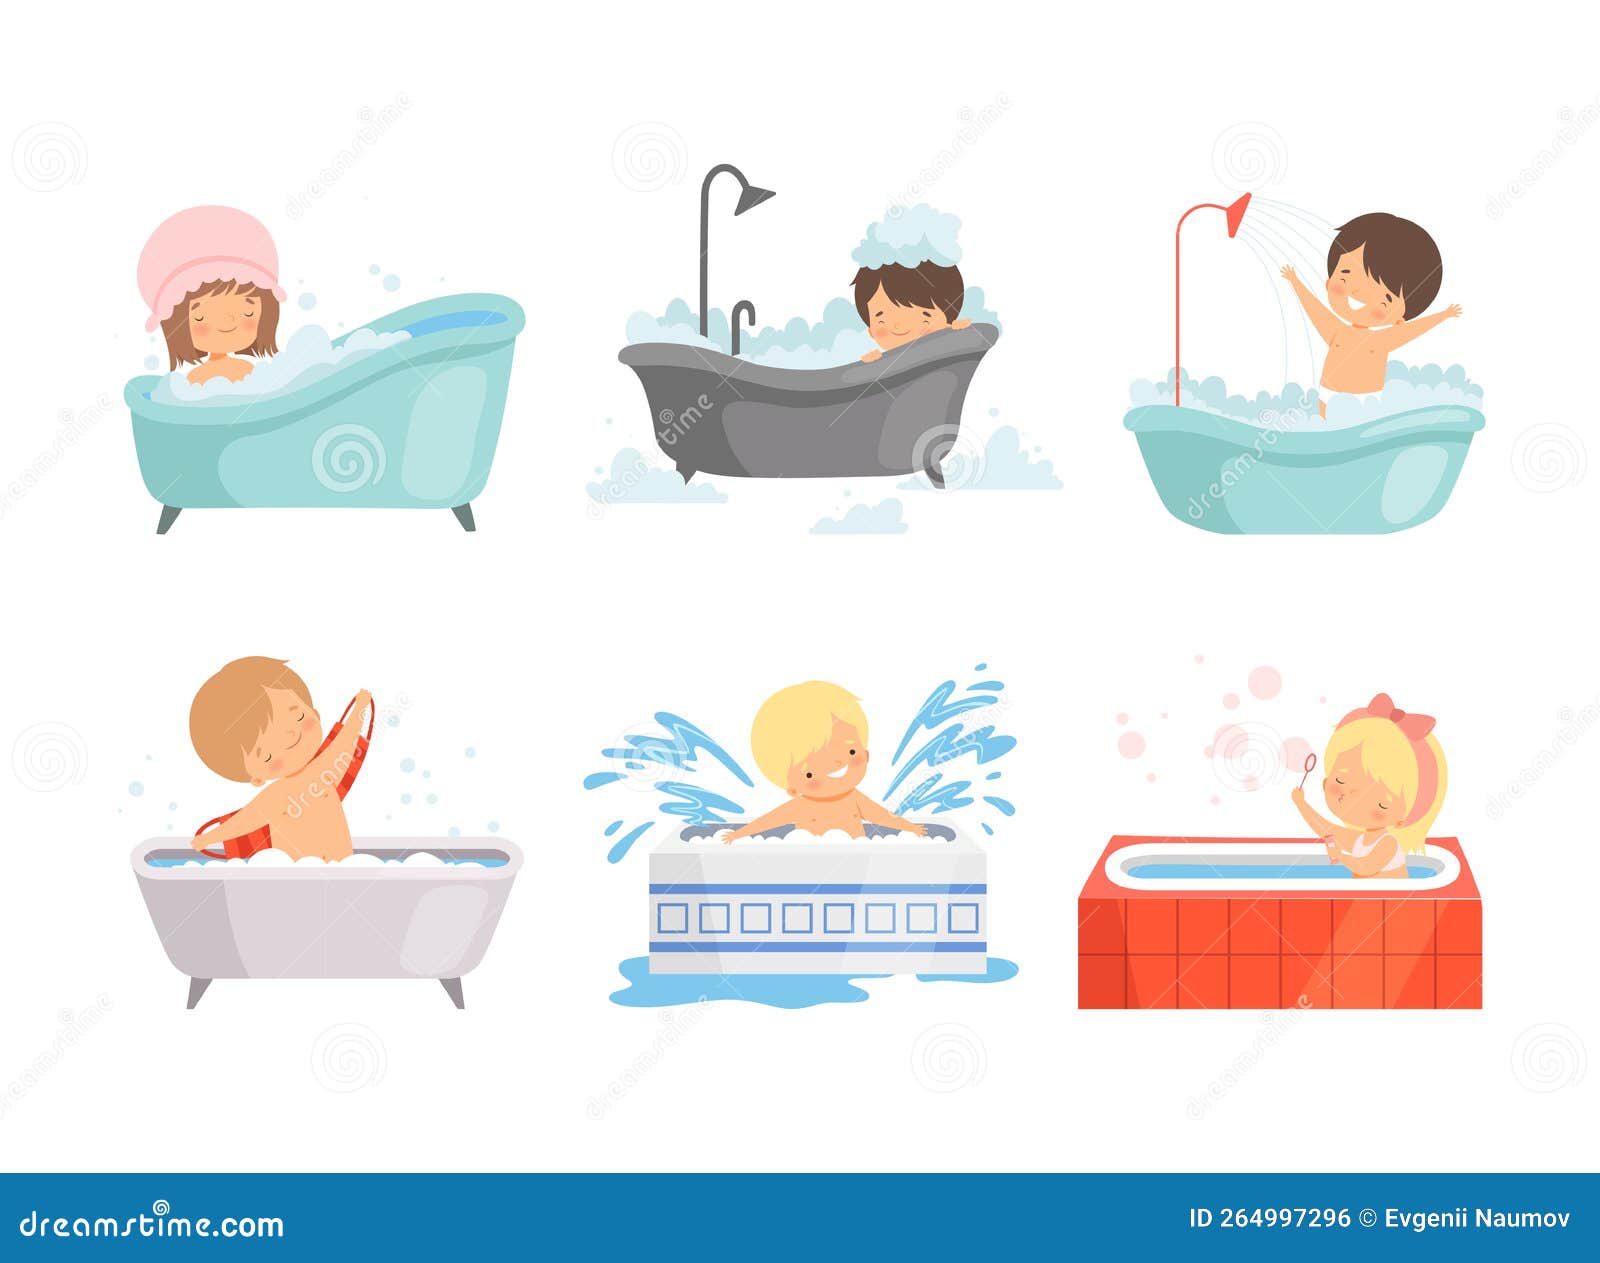 Cute Kids Taking Bath Set. Happy Boys and Girls Sitting in Bathtub with ...